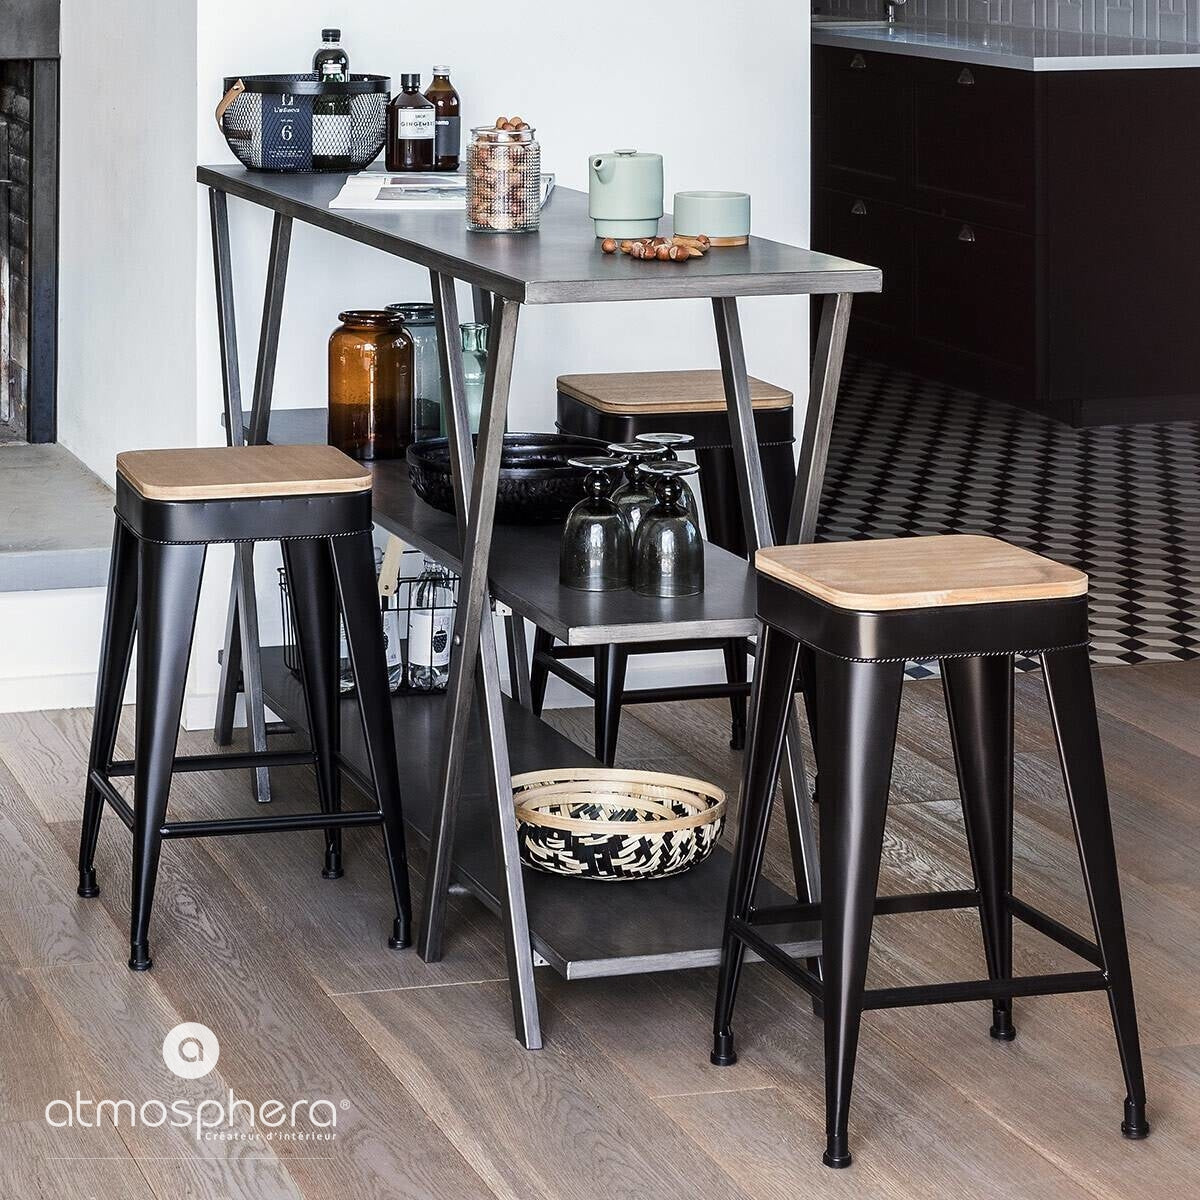 Taboret - stołek czteronożny, metalowy, barowy